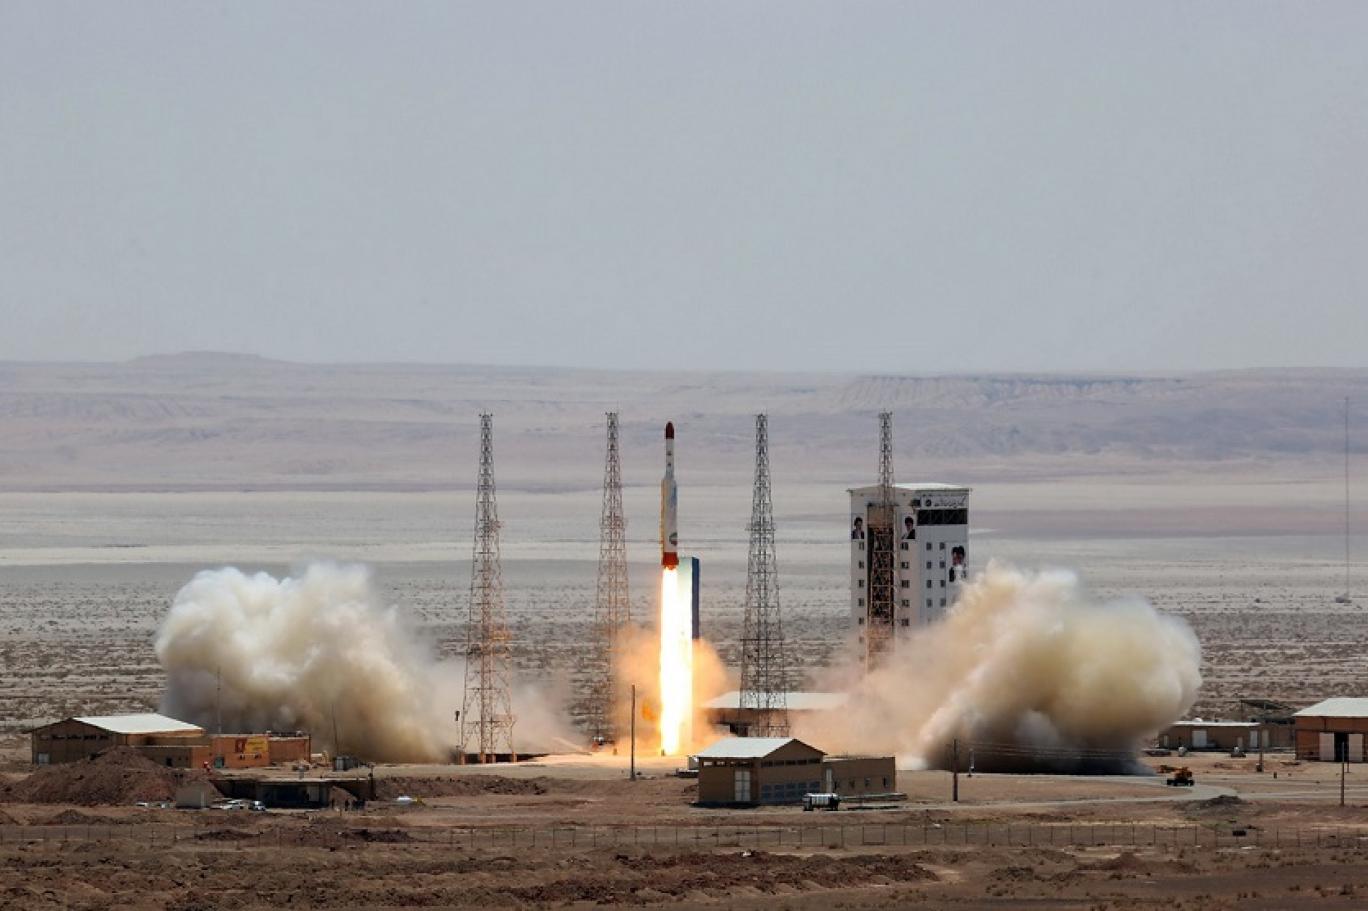 الأقمار الاصطناعية الإيرانية ستار لتطوير صواريخ حاملة للرؤوس النووية